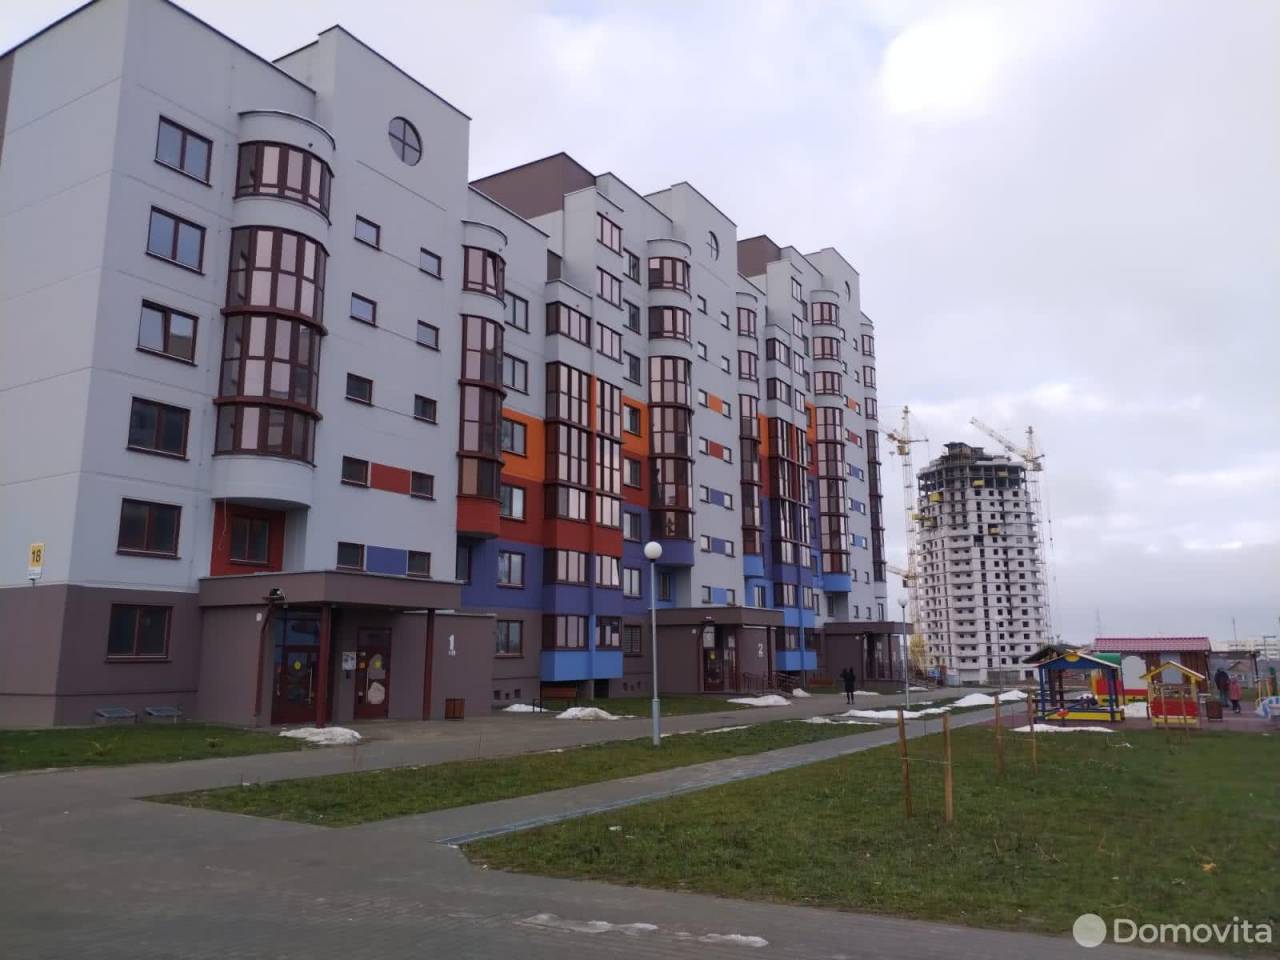 Цены в объявлениях растут каждую неделю: обзор предложений на рынке недвижимости в Гродно и области